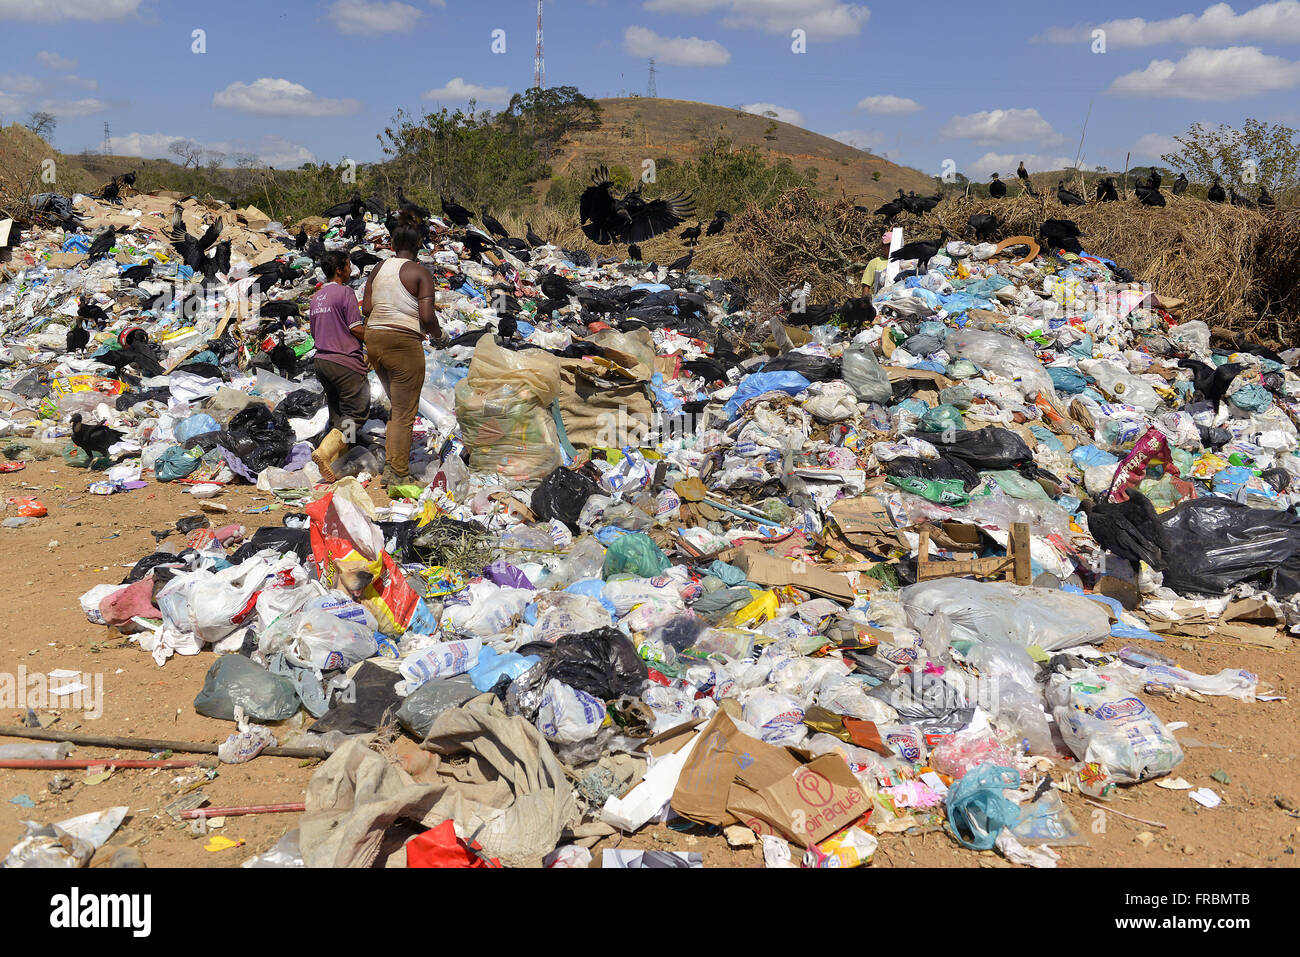 Raccoglitori di rifiuti riciclabili deposito a cielo aperto al km 17 della BR-040 Washington Luiz Foto Stock